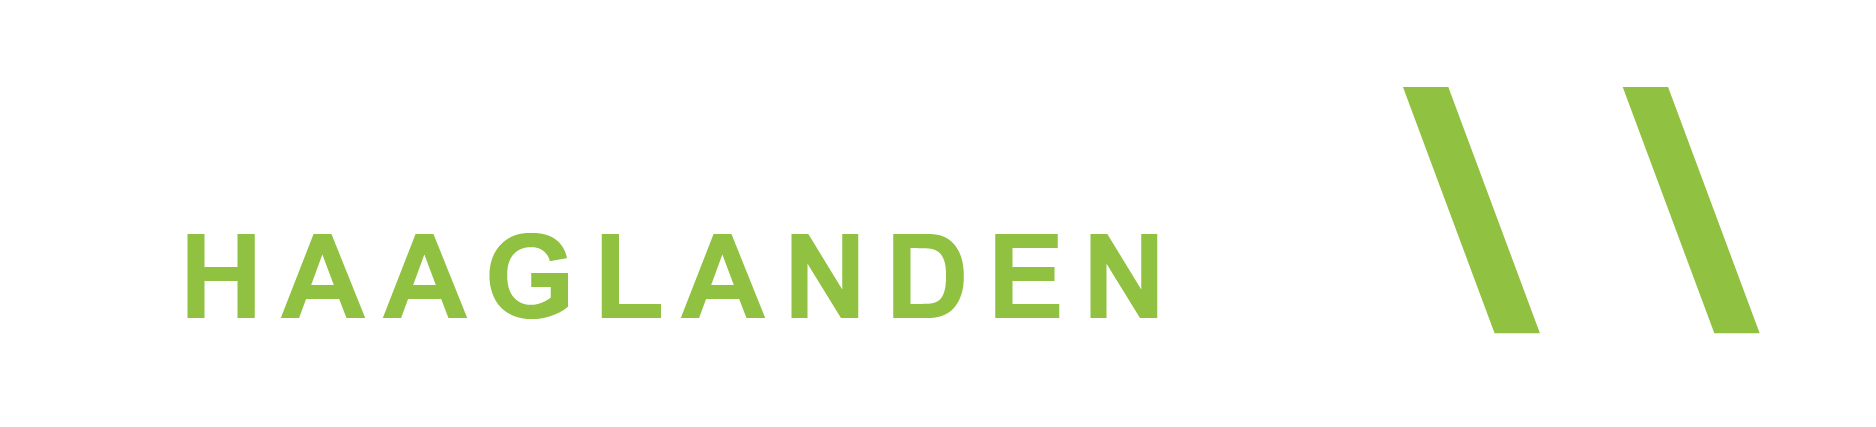 Partytentverhuur Haaglanden Logo